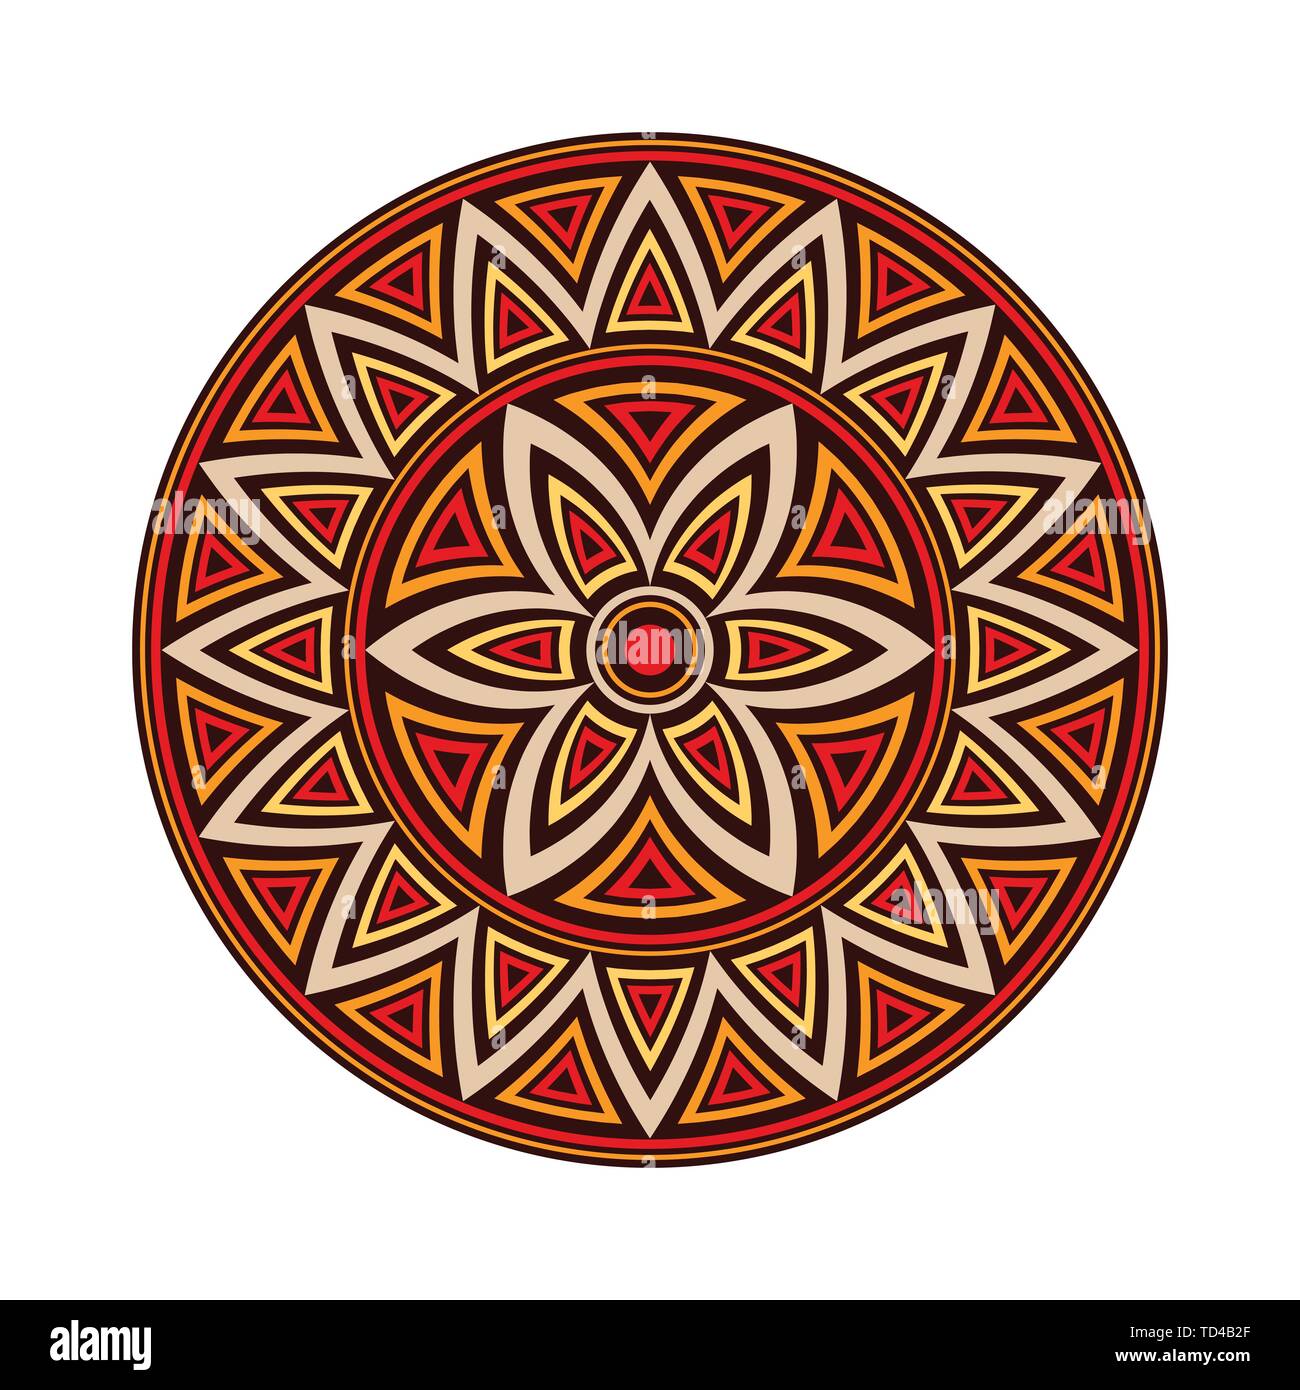 Mandala. Kreative runde Ornament. Runde symmetrische Muster. Vintage dekorative Elemente. Ethnische orientalische Muster. Osmanische Motive. Tattoo Design. Stock Vektor